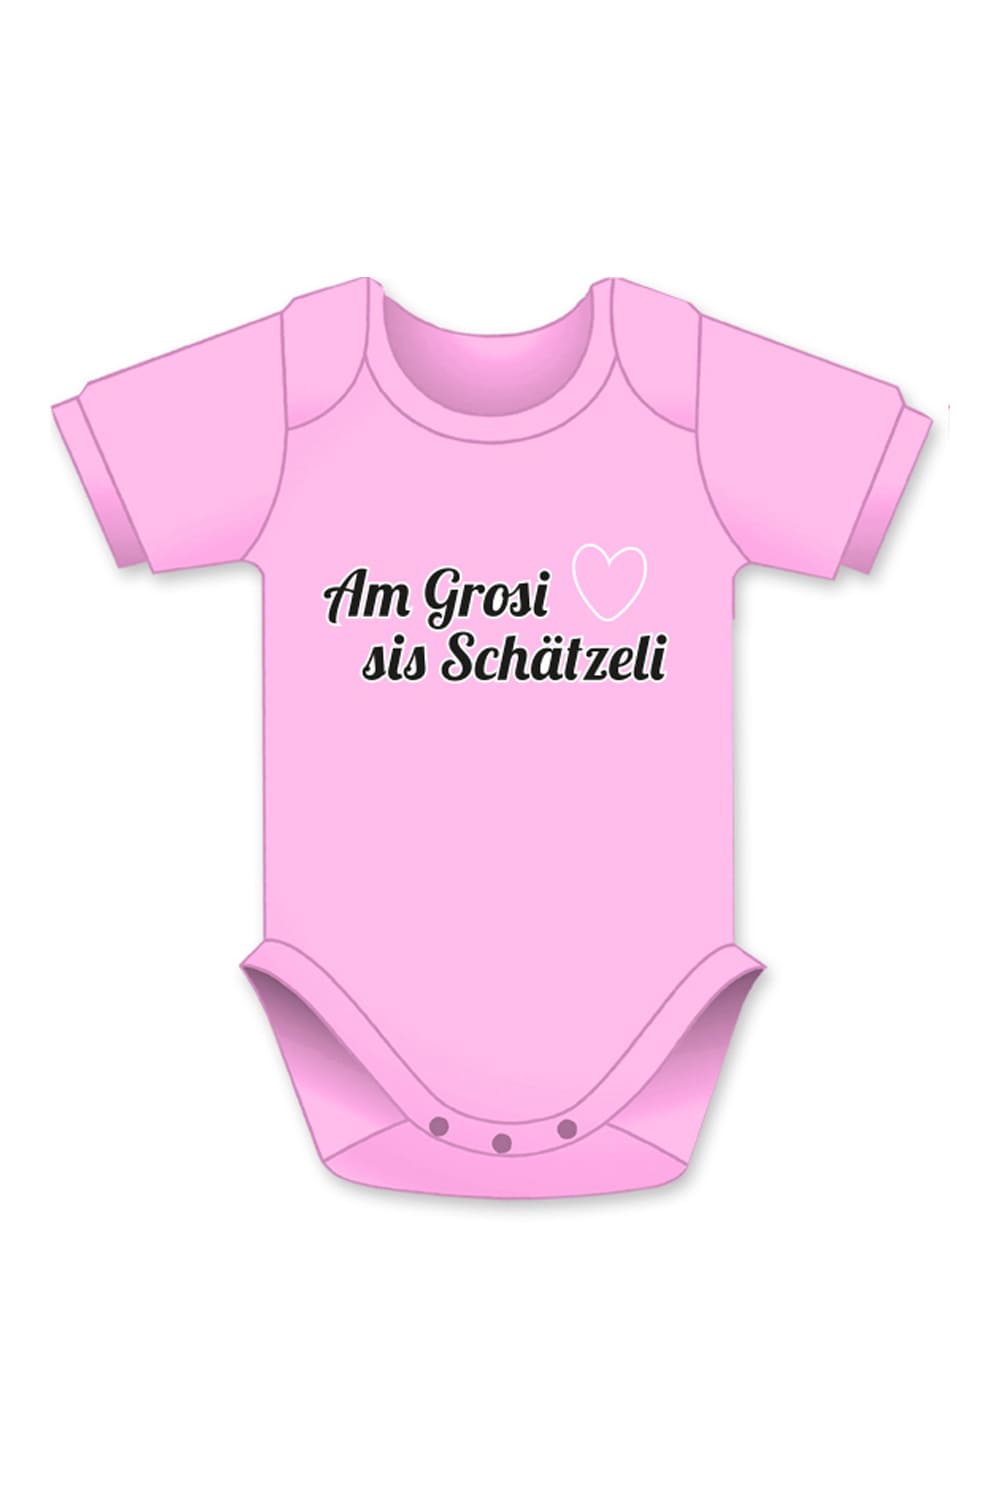 Grosi sis Schaetzeli Baby Body mit Aufschrift und Herz Bild. In diversen Farben und Groessen erhaeltlich. Ideales Geschenk zur Geburt